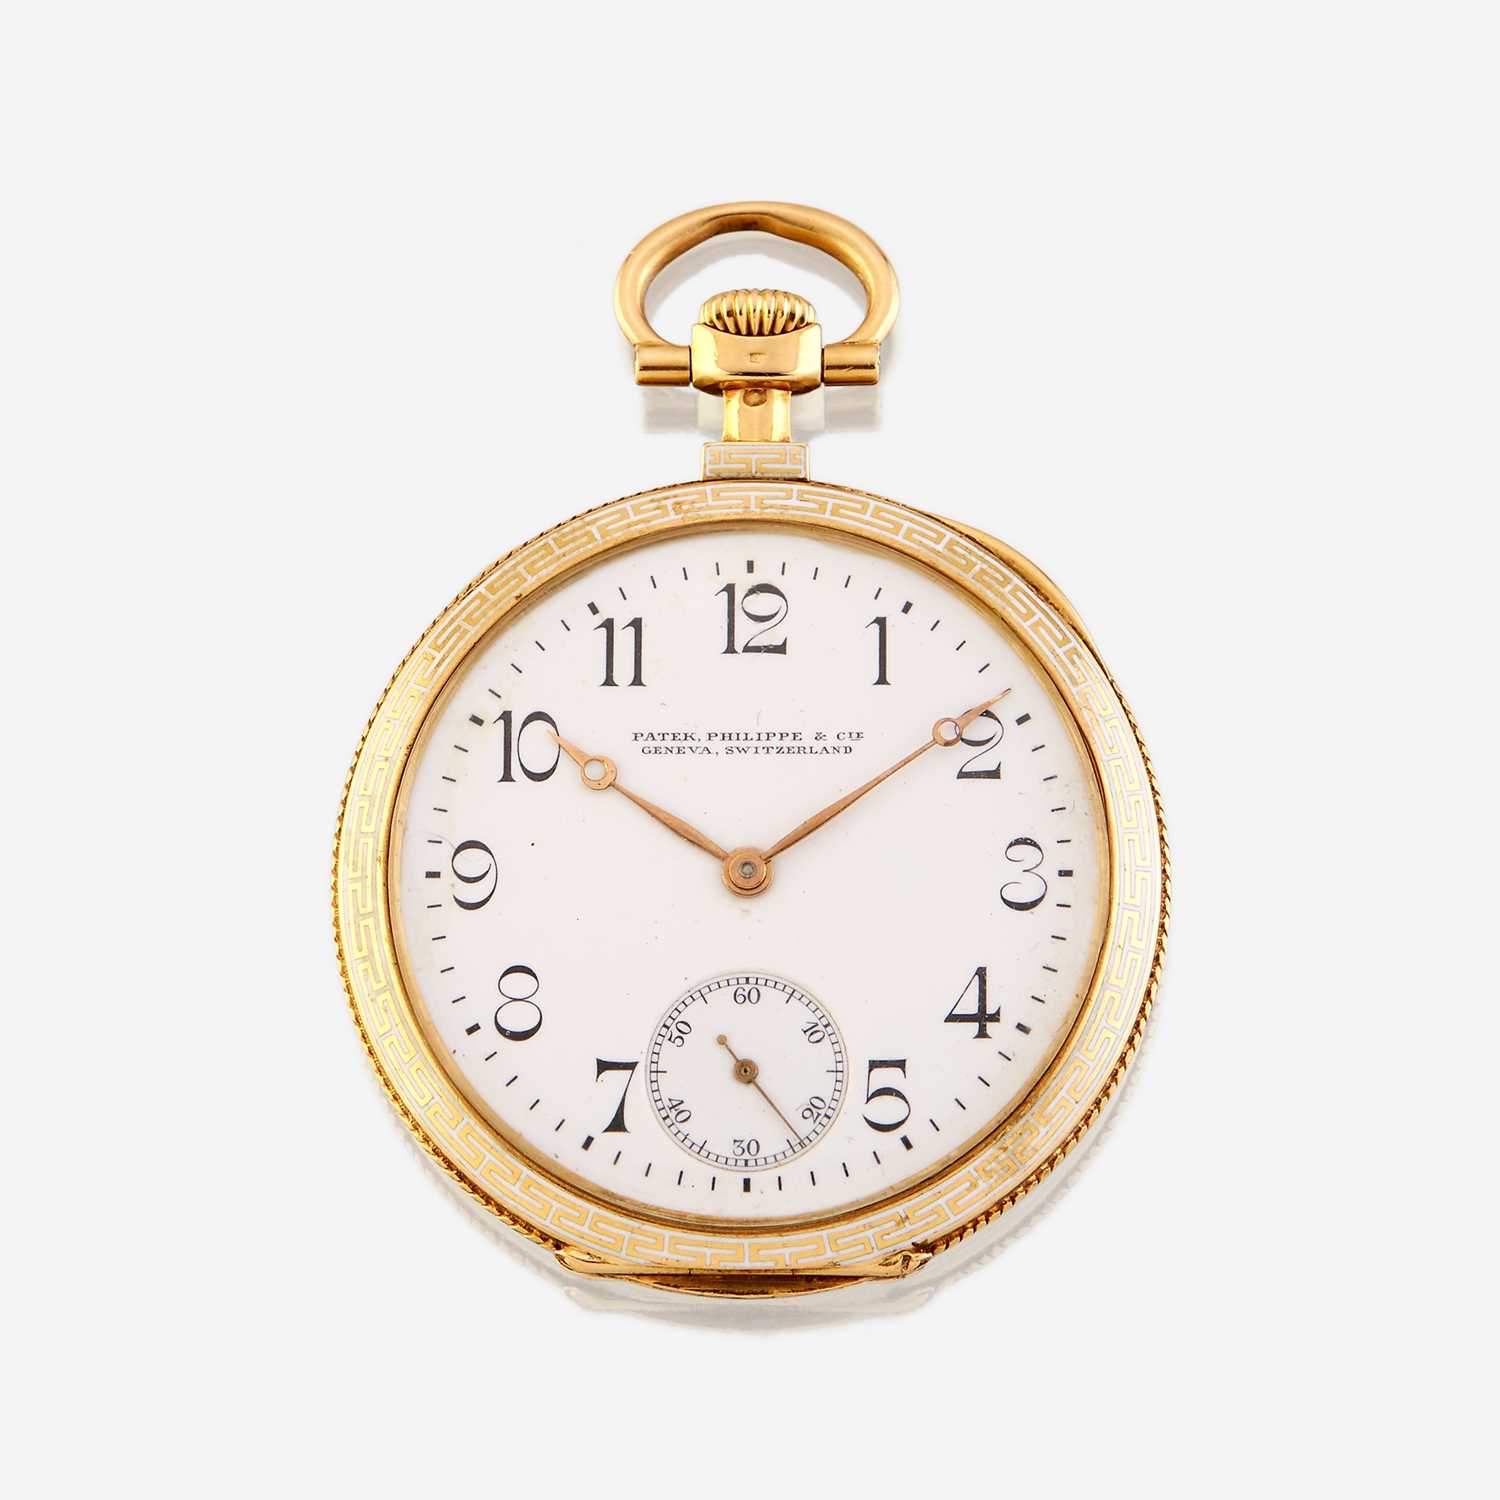 Lot 181 - An eighteen karat gold and enamel open face pocket watch, Patek Philippe